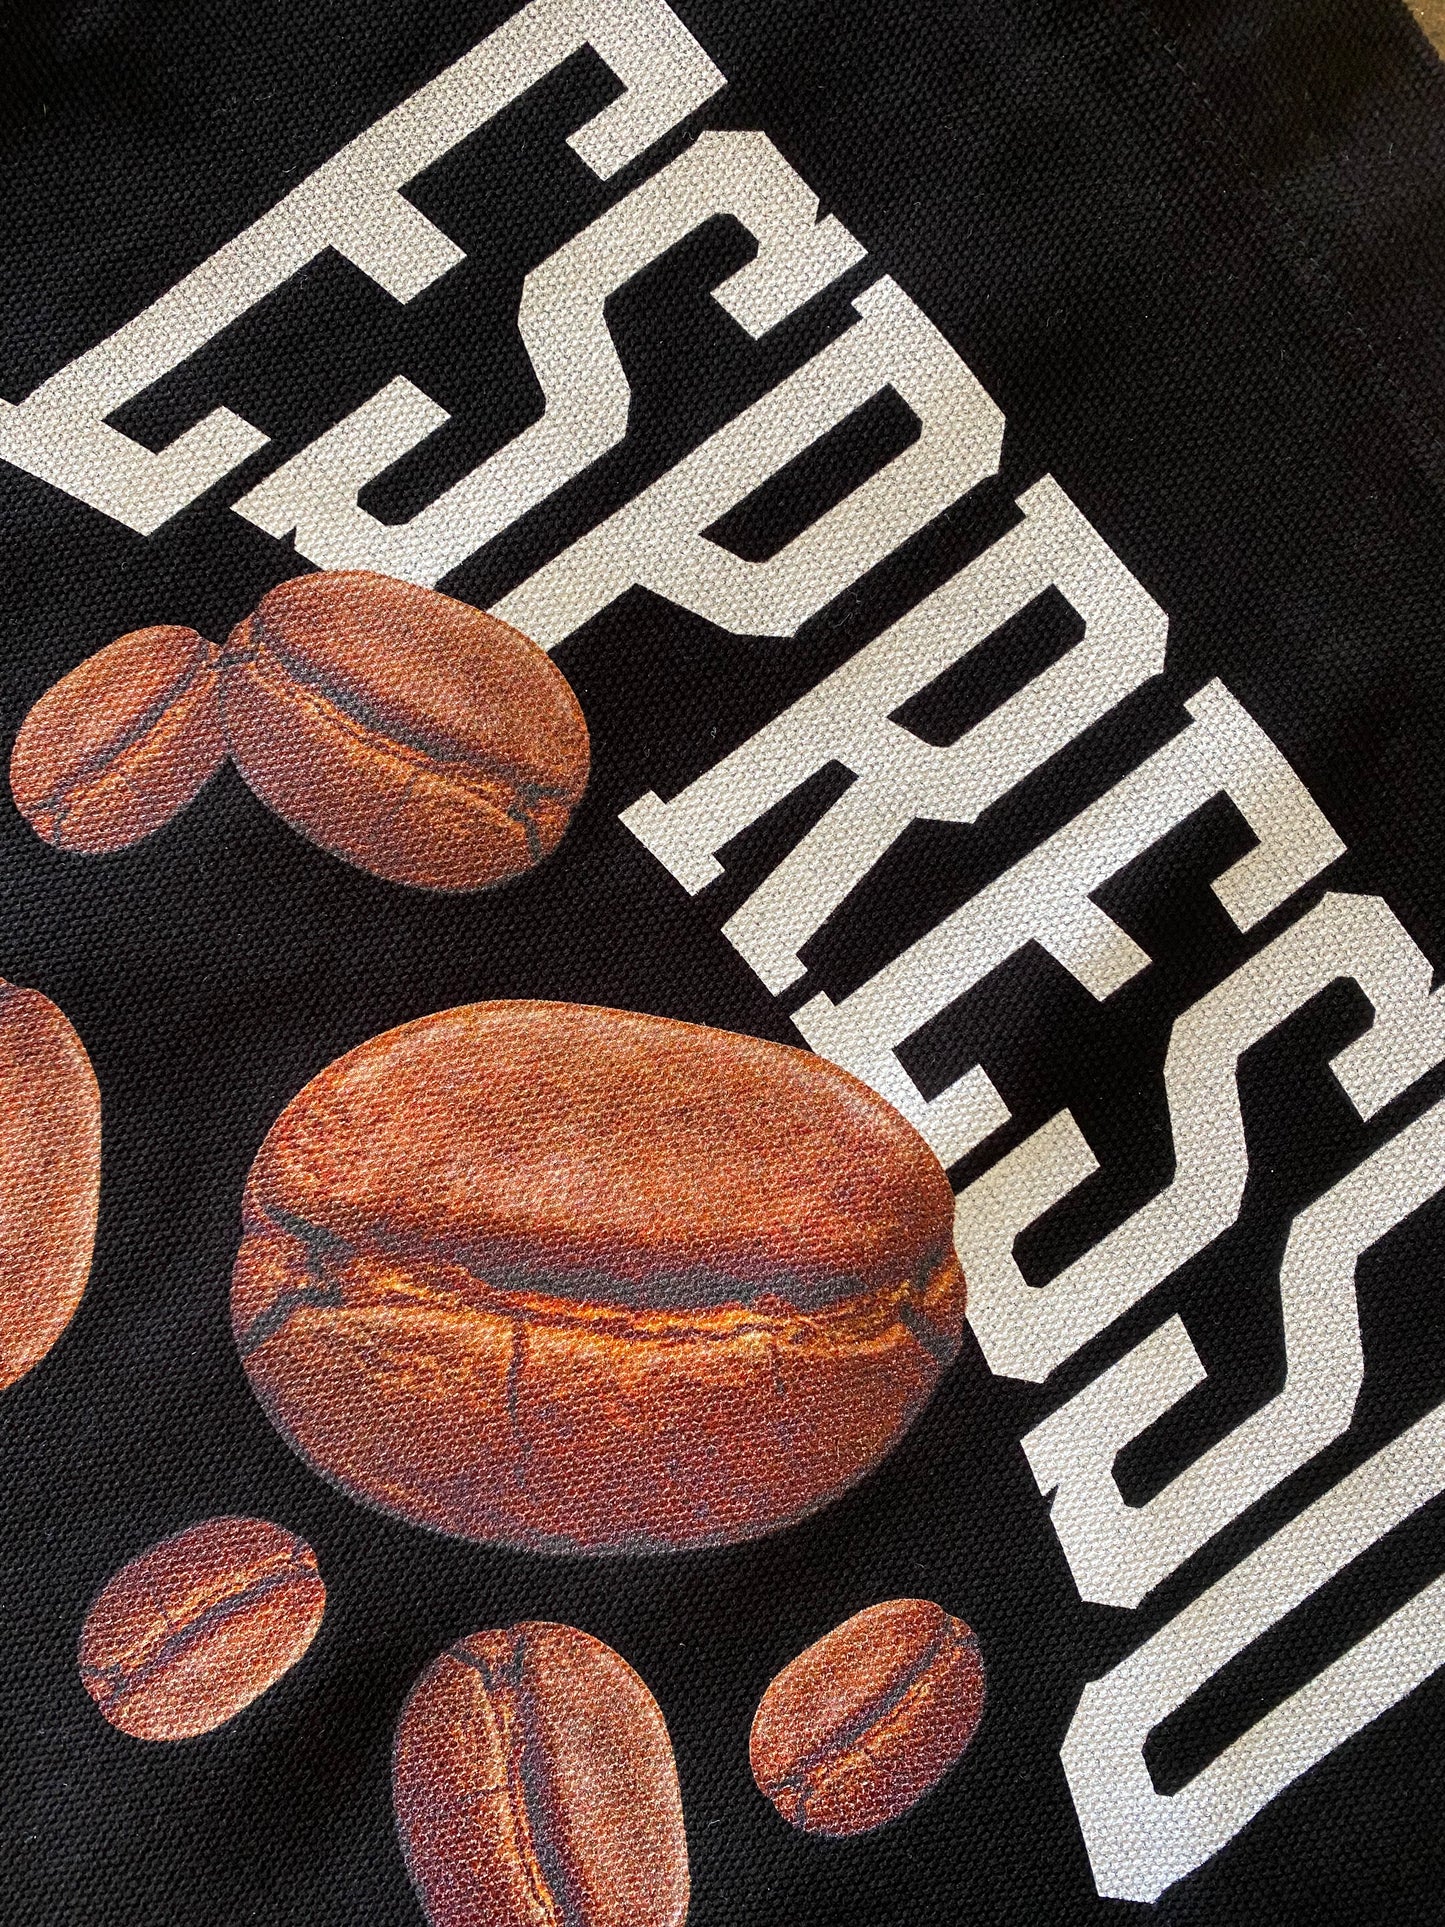 Espresso Beans Tote Bag